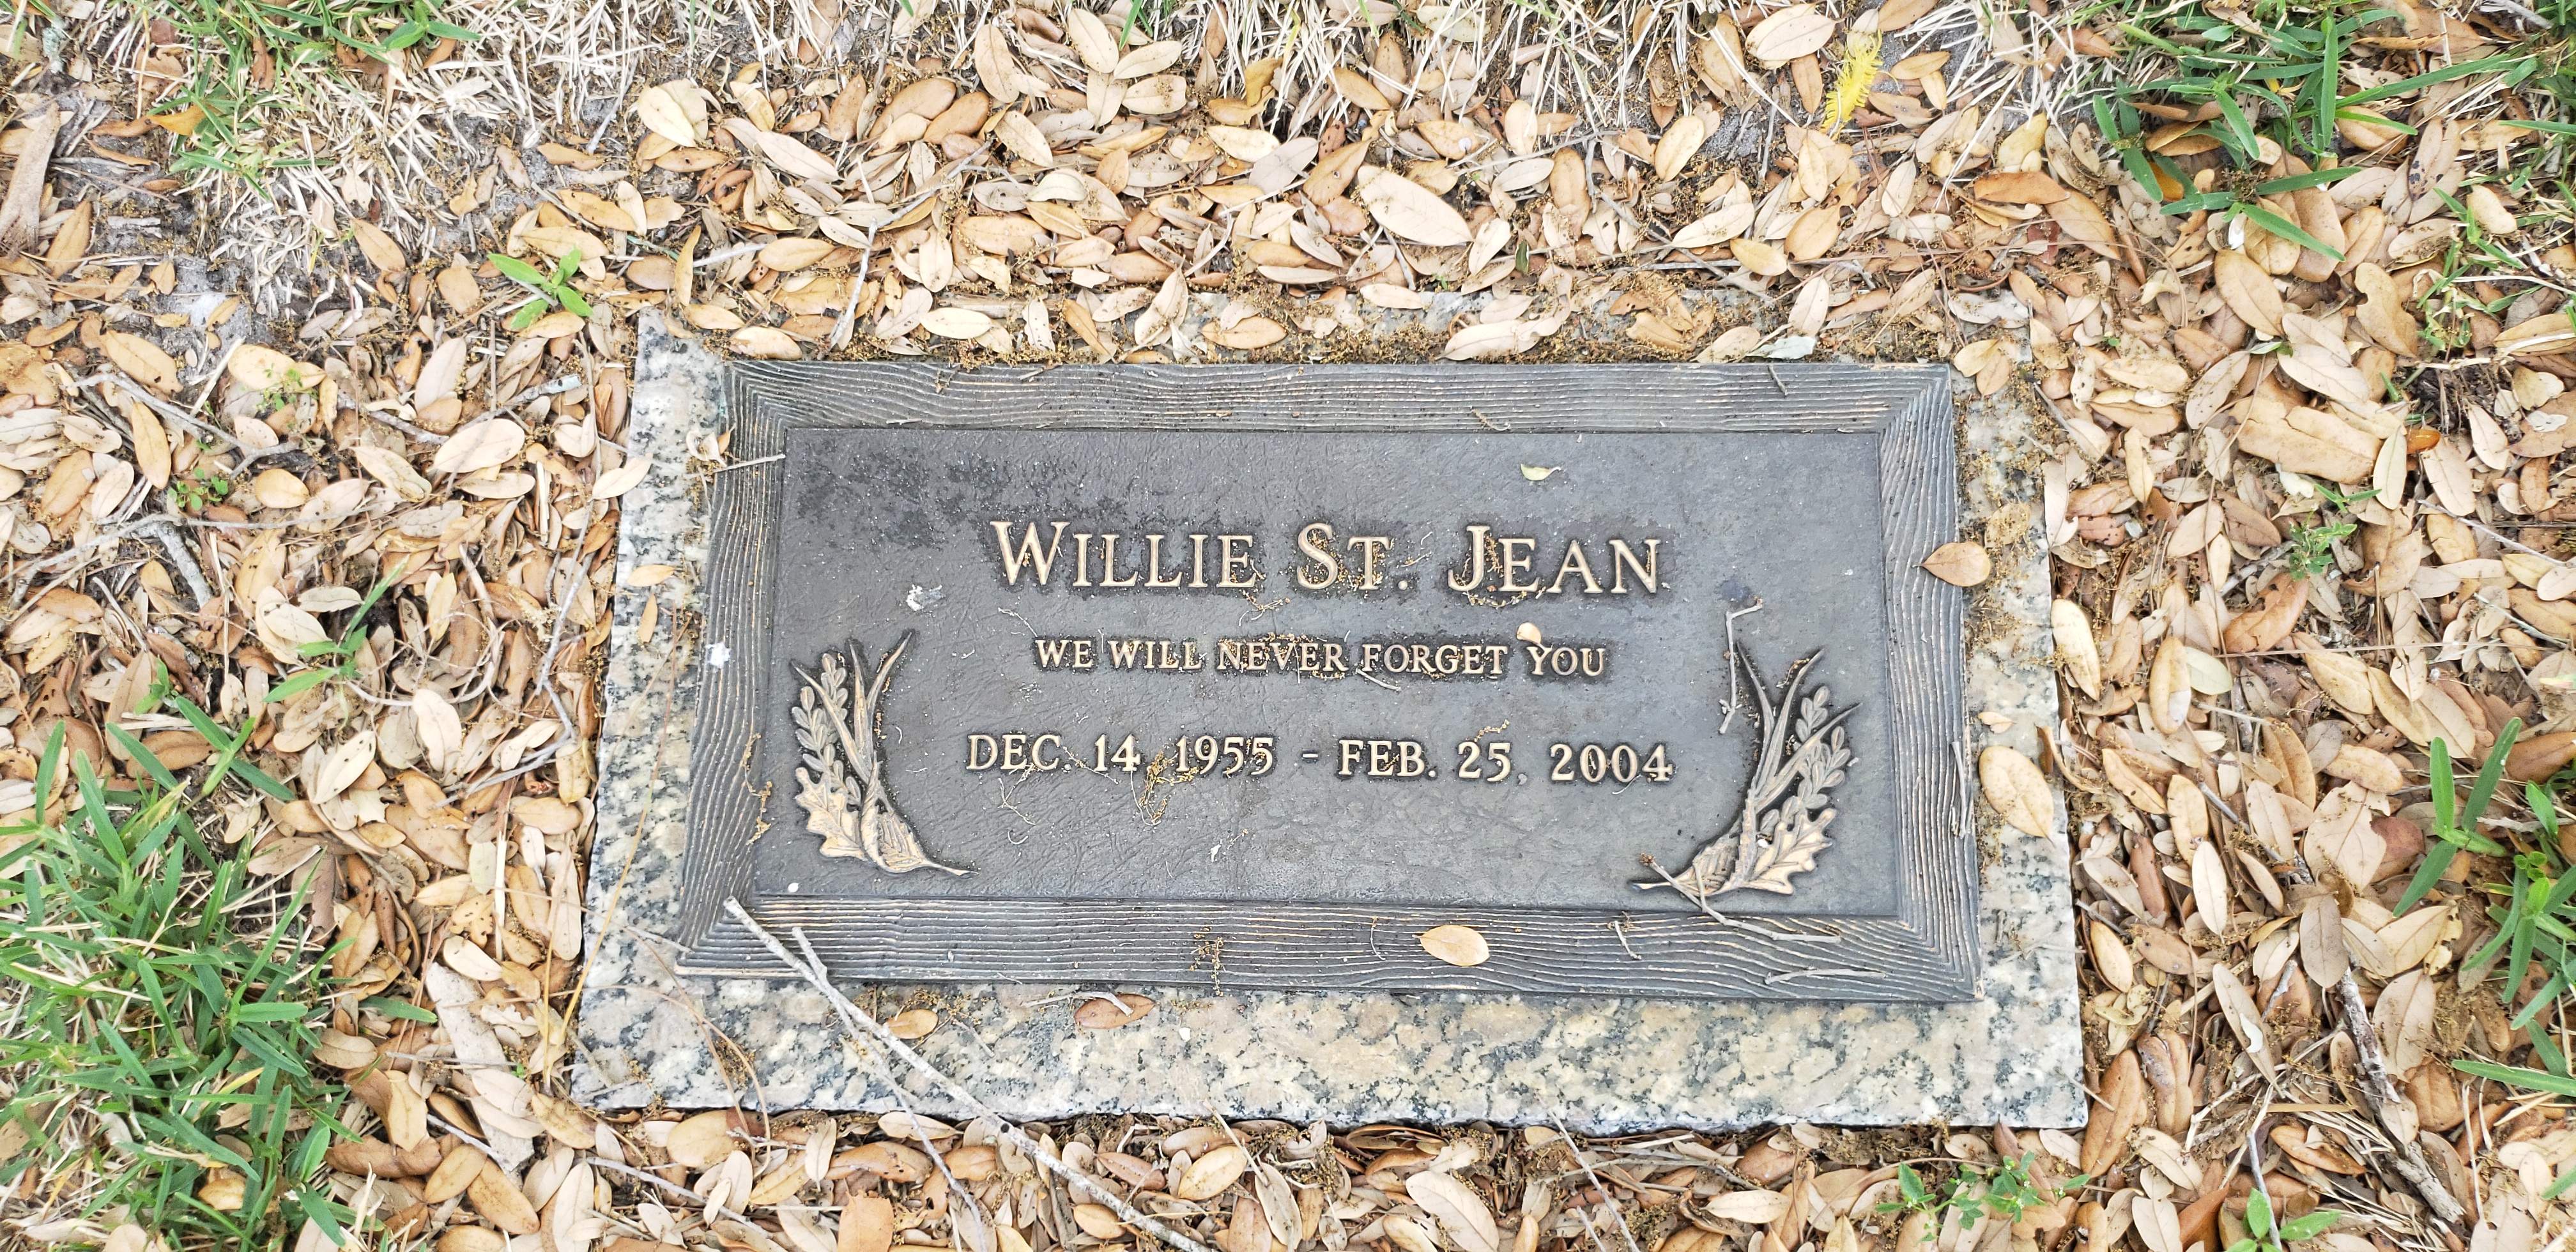 Willie St Jean